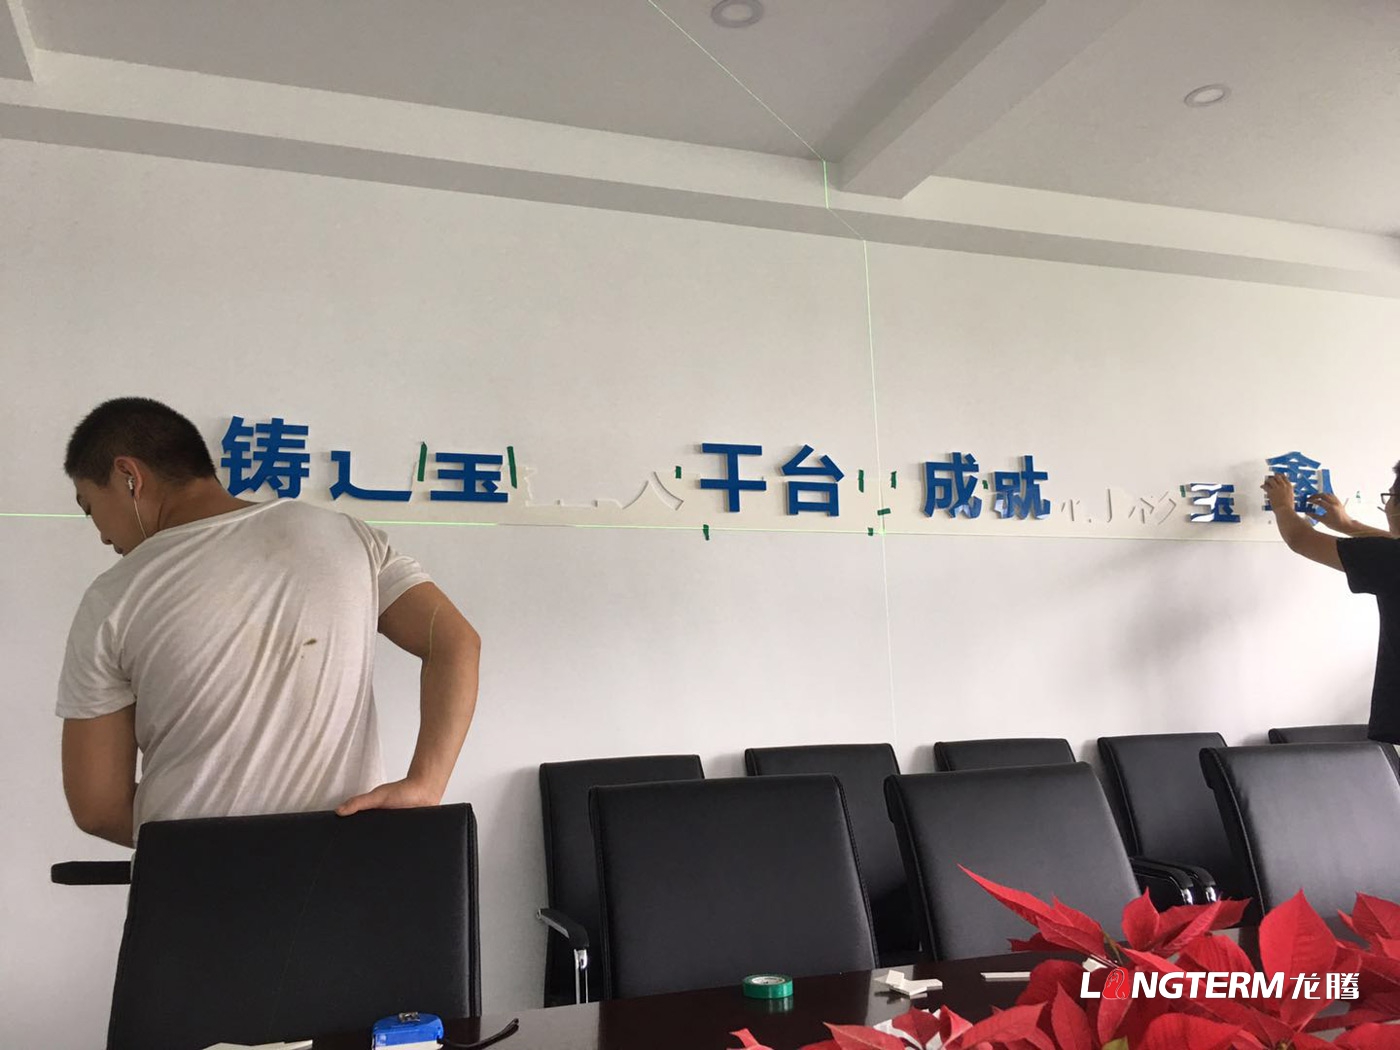 四川宝鑫建设有限公司文化墙已经安装完毕